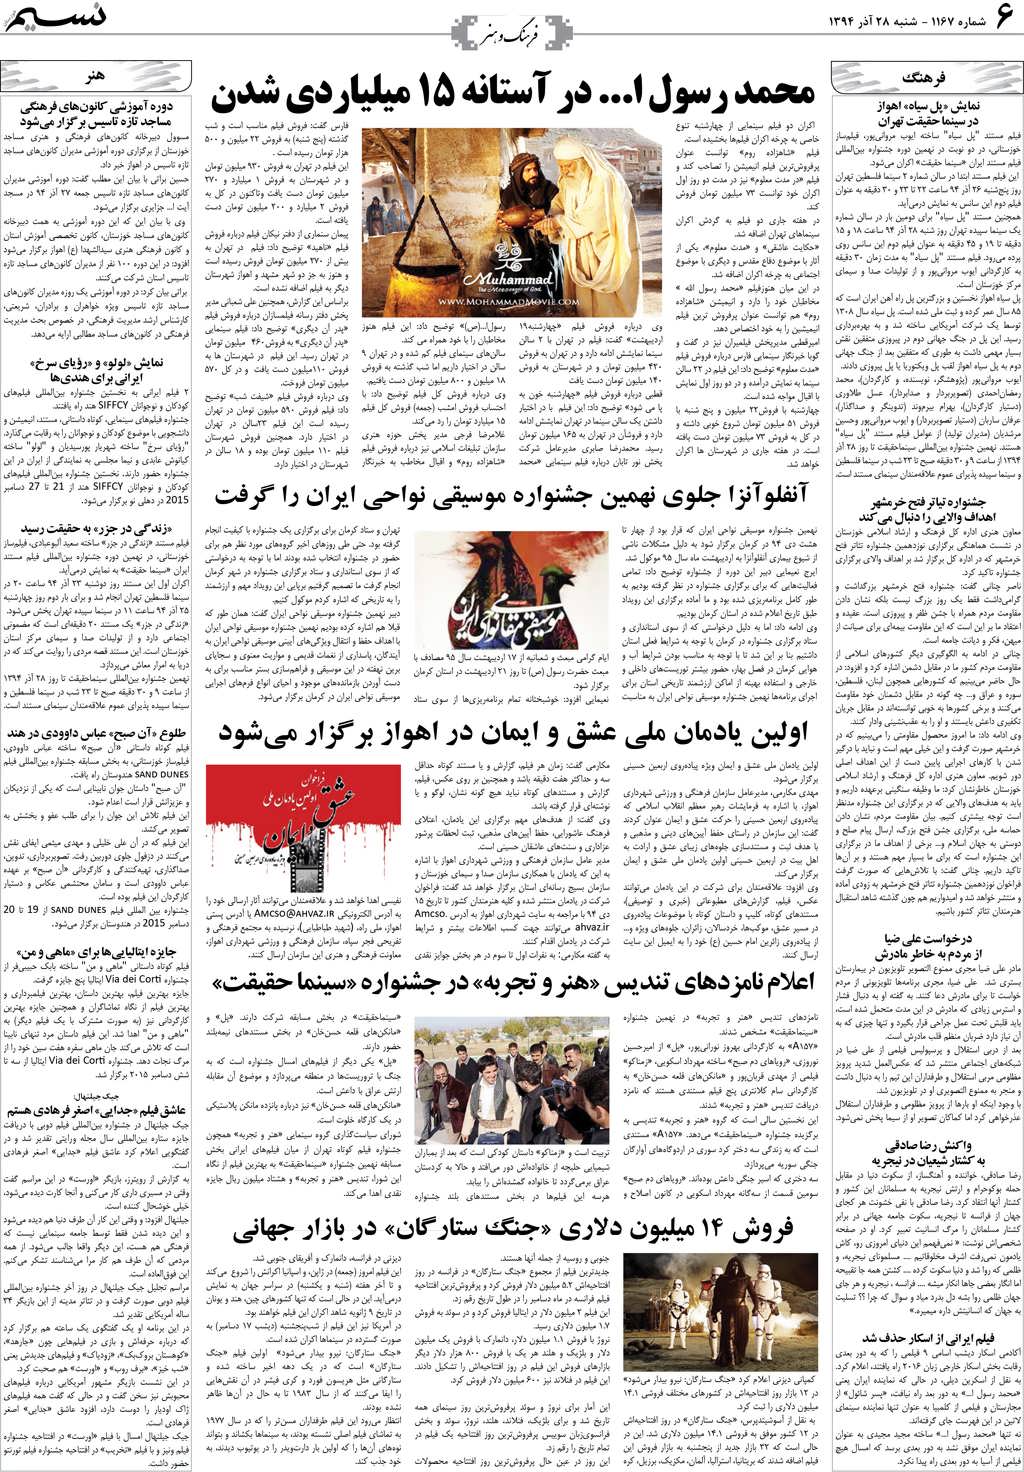 صفحه فرهنگ و هنر روزنامه نسیم شماره 1167